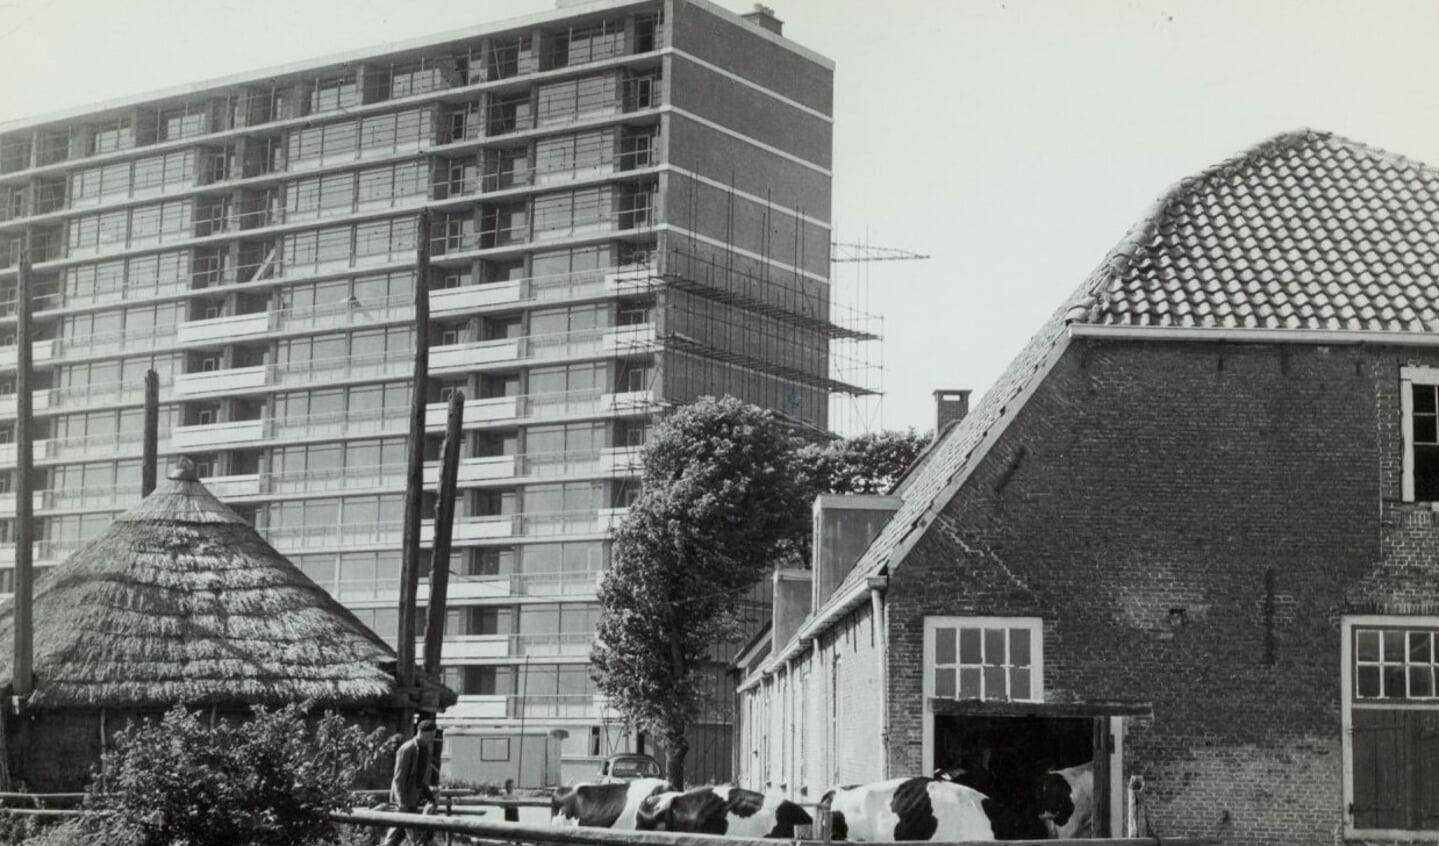 In de jaren '50 en '60 moesten eeuwenoude boerenbedrijven in Rijswijk plaatsmaken voor nieuwbouw. Op deze foto staat een boerderij in groot contrast met de flat erachter.